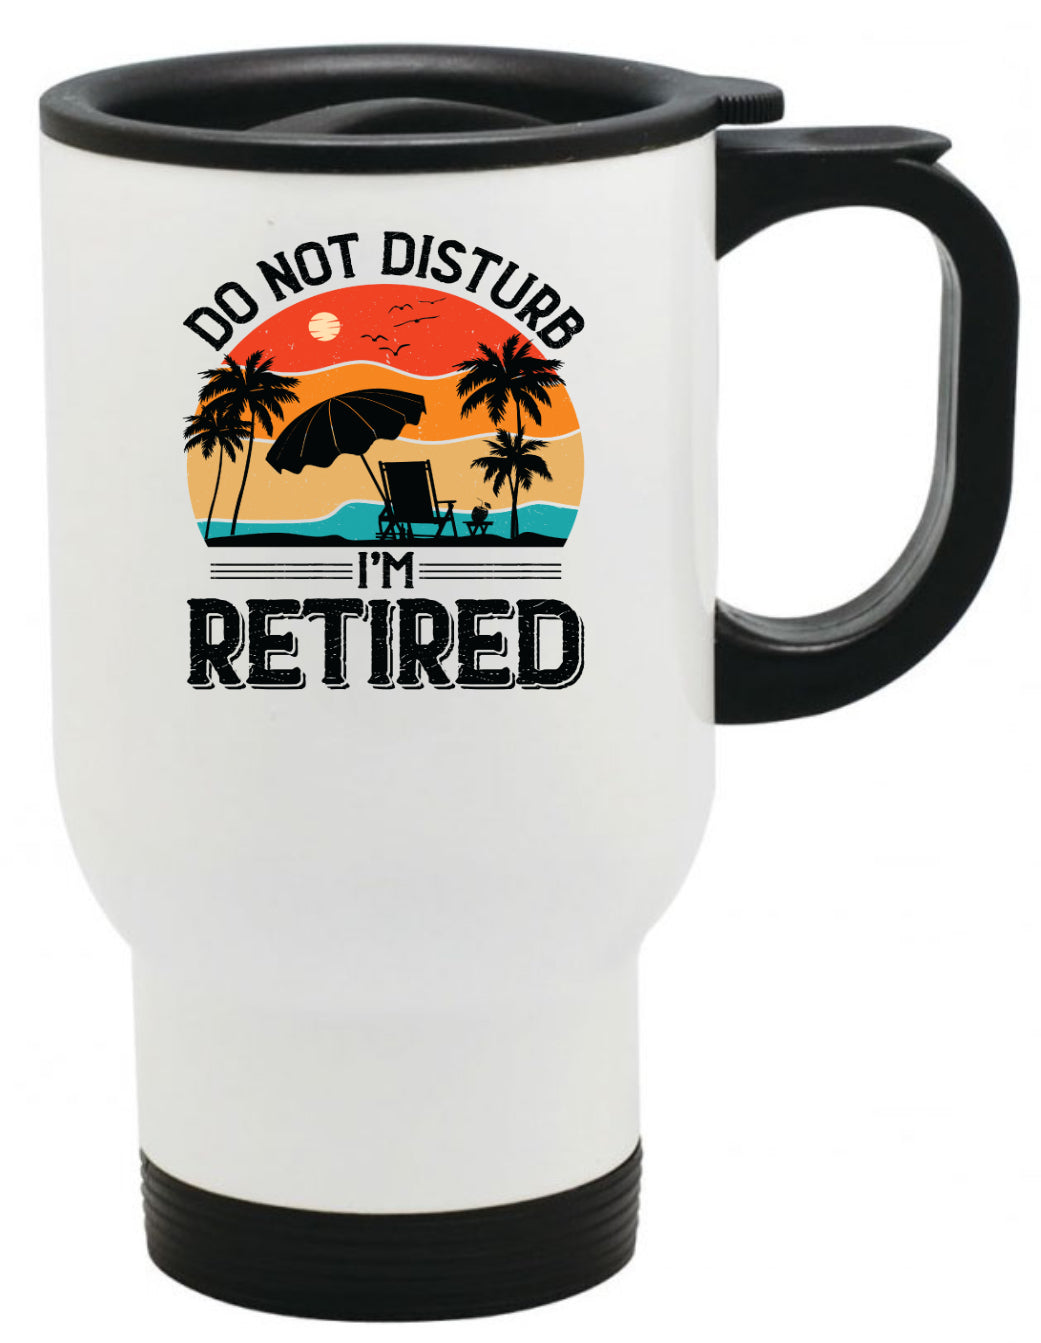 Retirement Coffee Mug, Do not Disturb, 11oz, 15oz, 20oz, Black Ringer Coffee Mug 11oz, Stainless Steel Travel Mug 14oz Ceramic Drinkware